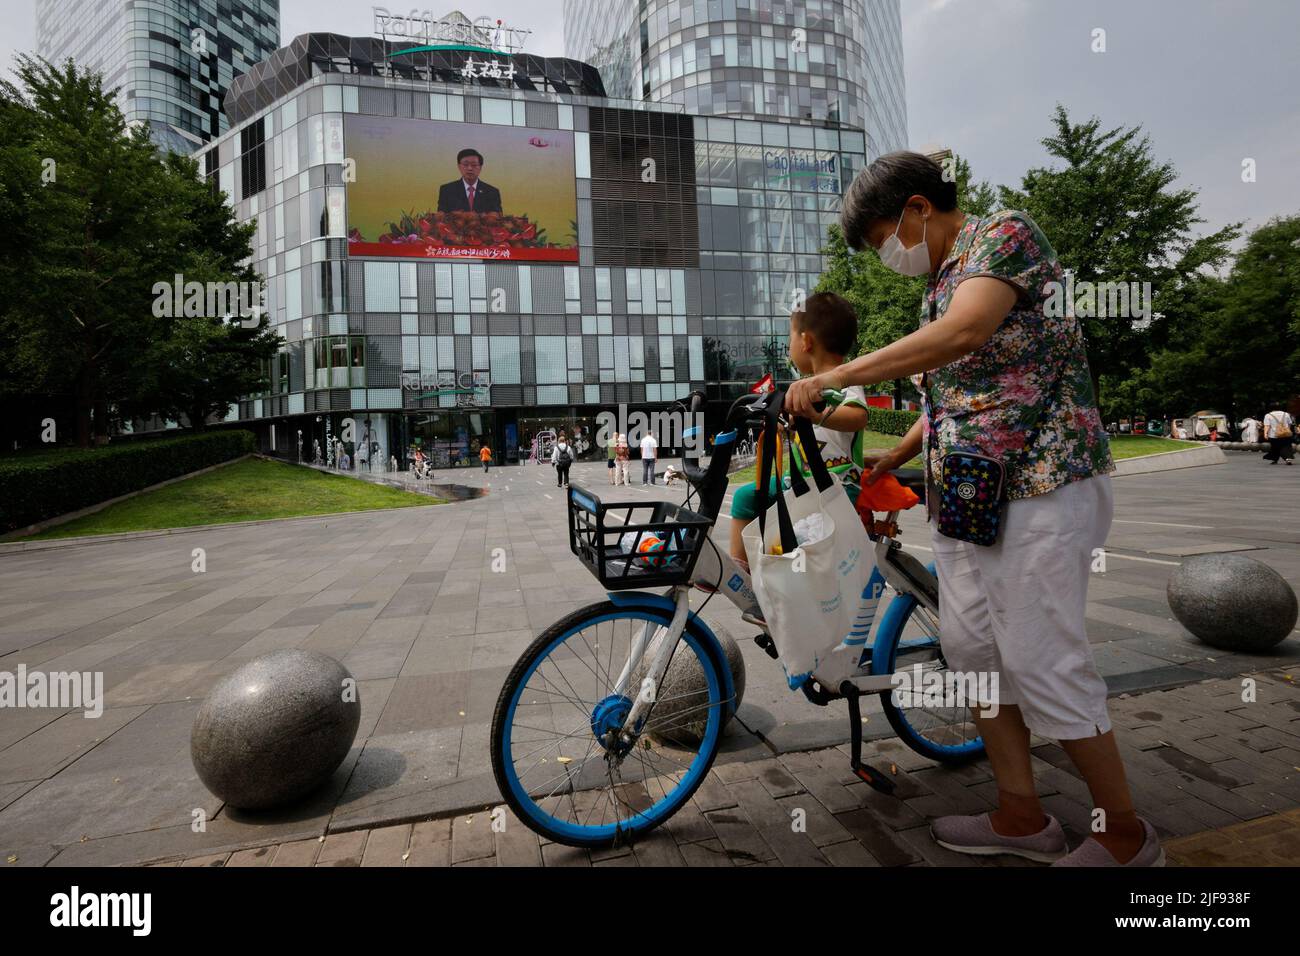 Auf einem Bildschirm wird die Rede des neuen Chefs von Hongkong, John Lee, während einer Zeremonie zur Einweihung der neuen Regierung der Stadt in einem Einkaufszentrum in Peking, China, am 1. Juli 2022, zum 25.. Jahrestag der Übergabe der Stadt von Großbritannien an China, gezeigt. REUTERS/Thomas Peter Stockfoto